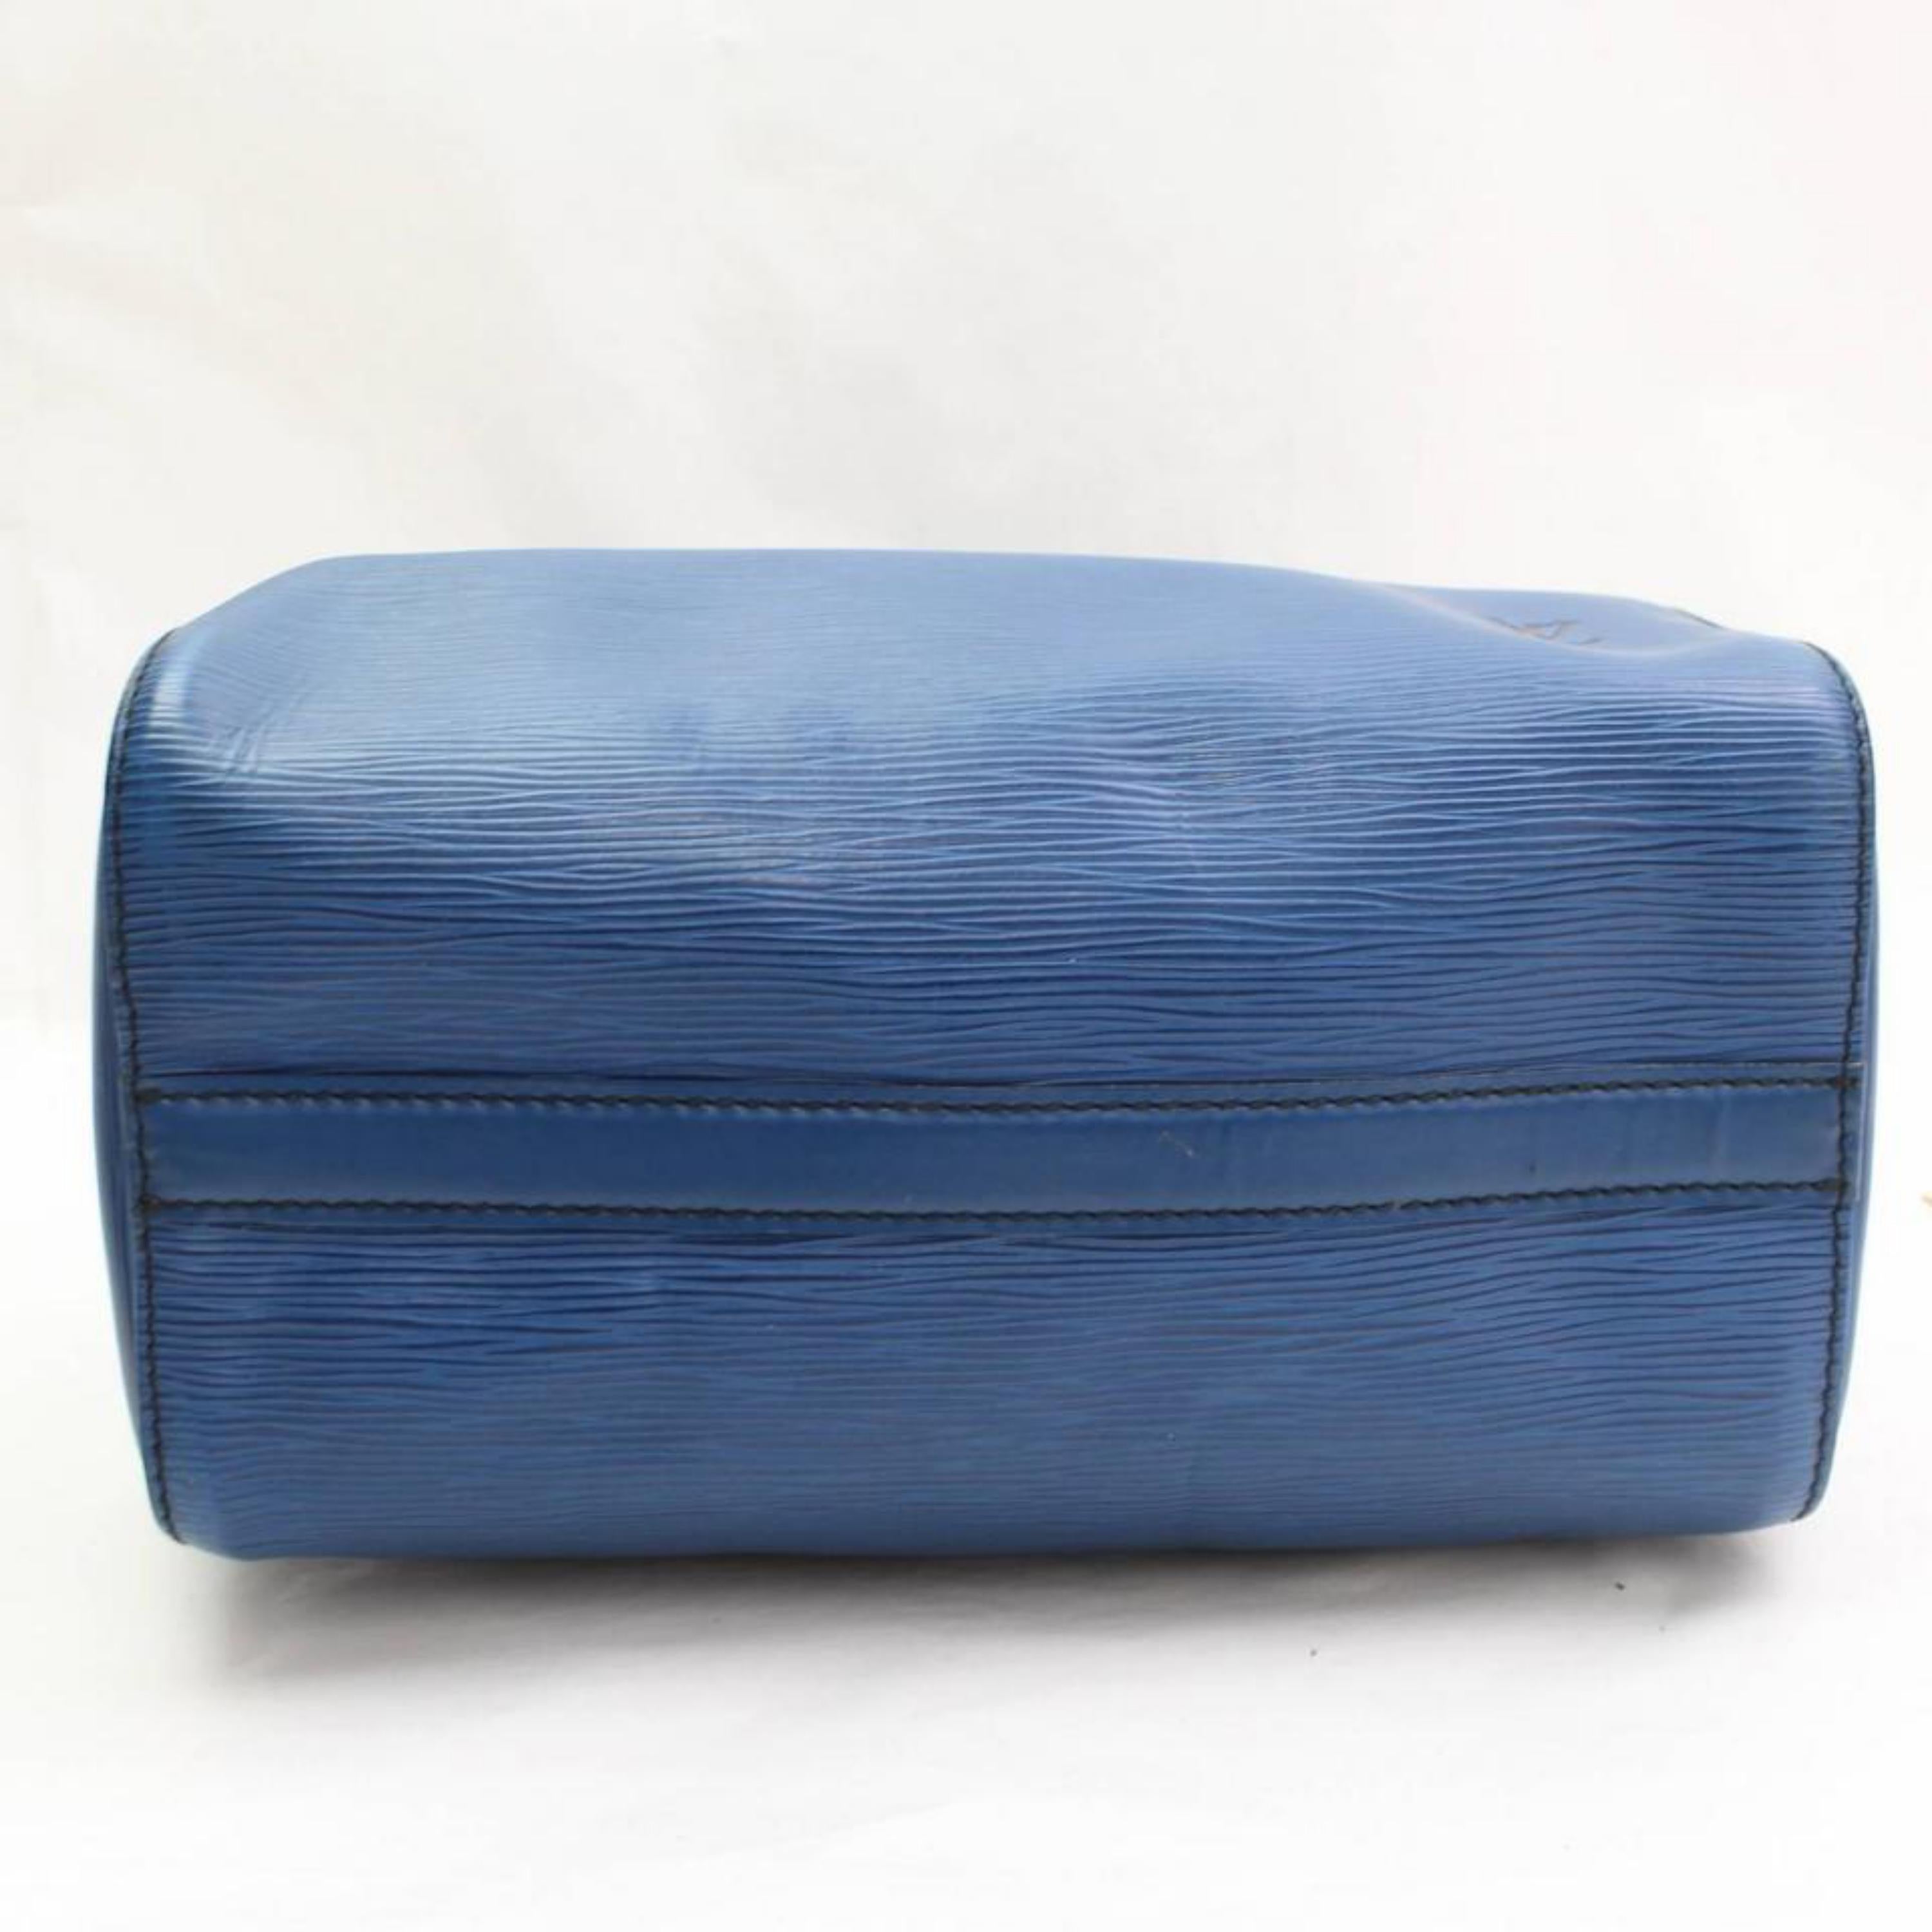 Louis Vuitton Speedy Epi 25 868003 Blue Leather Satchel For Sale 4